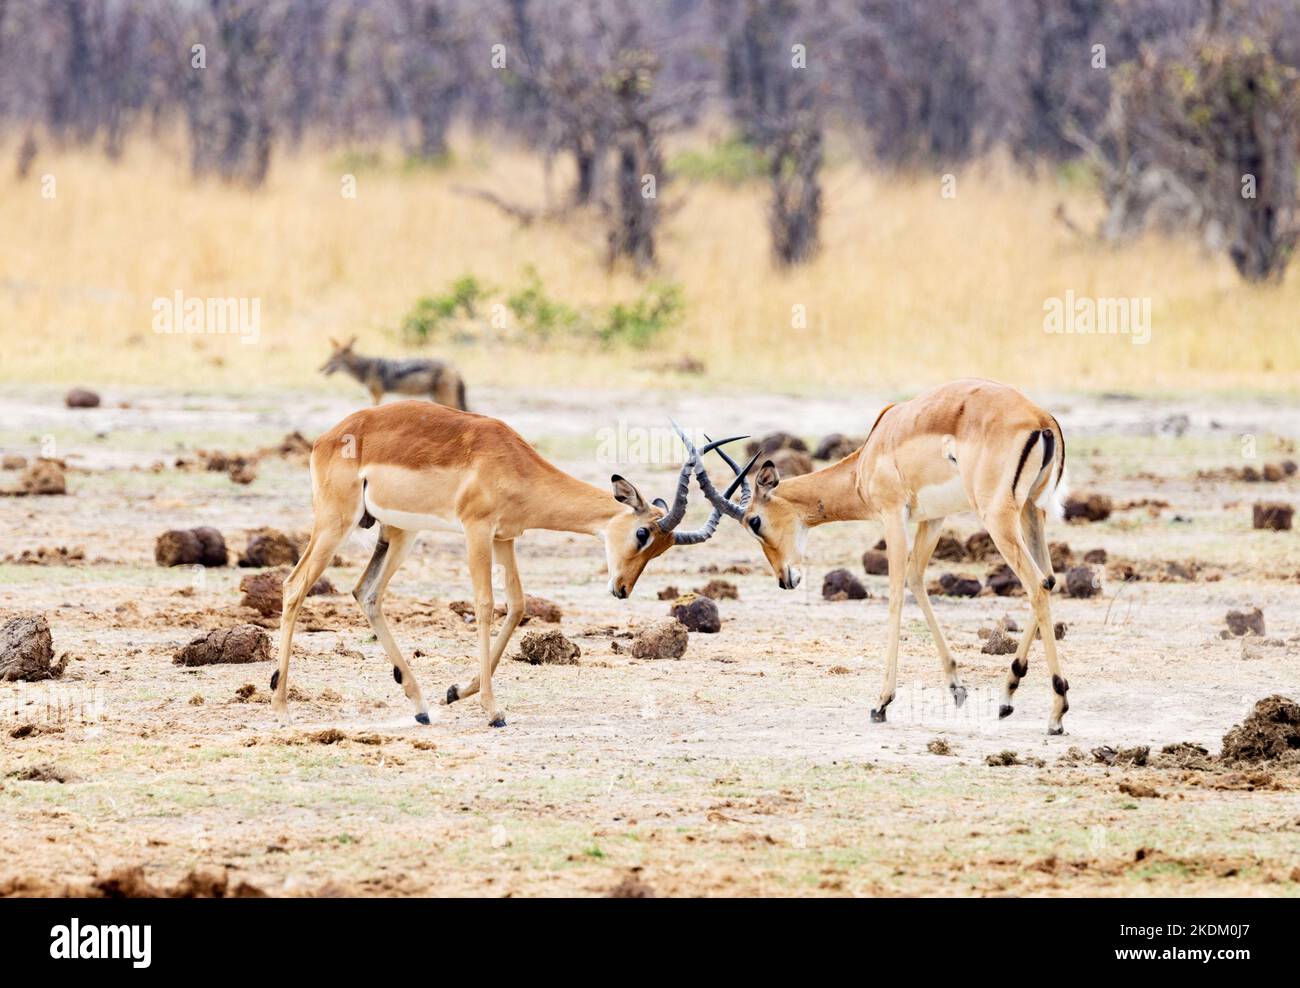 Deux hommes qui combattent des impalas, Aepyceros melampus, parc national de Chobe, Botswana, Afrique. Antilope africaine. Banque D'Images